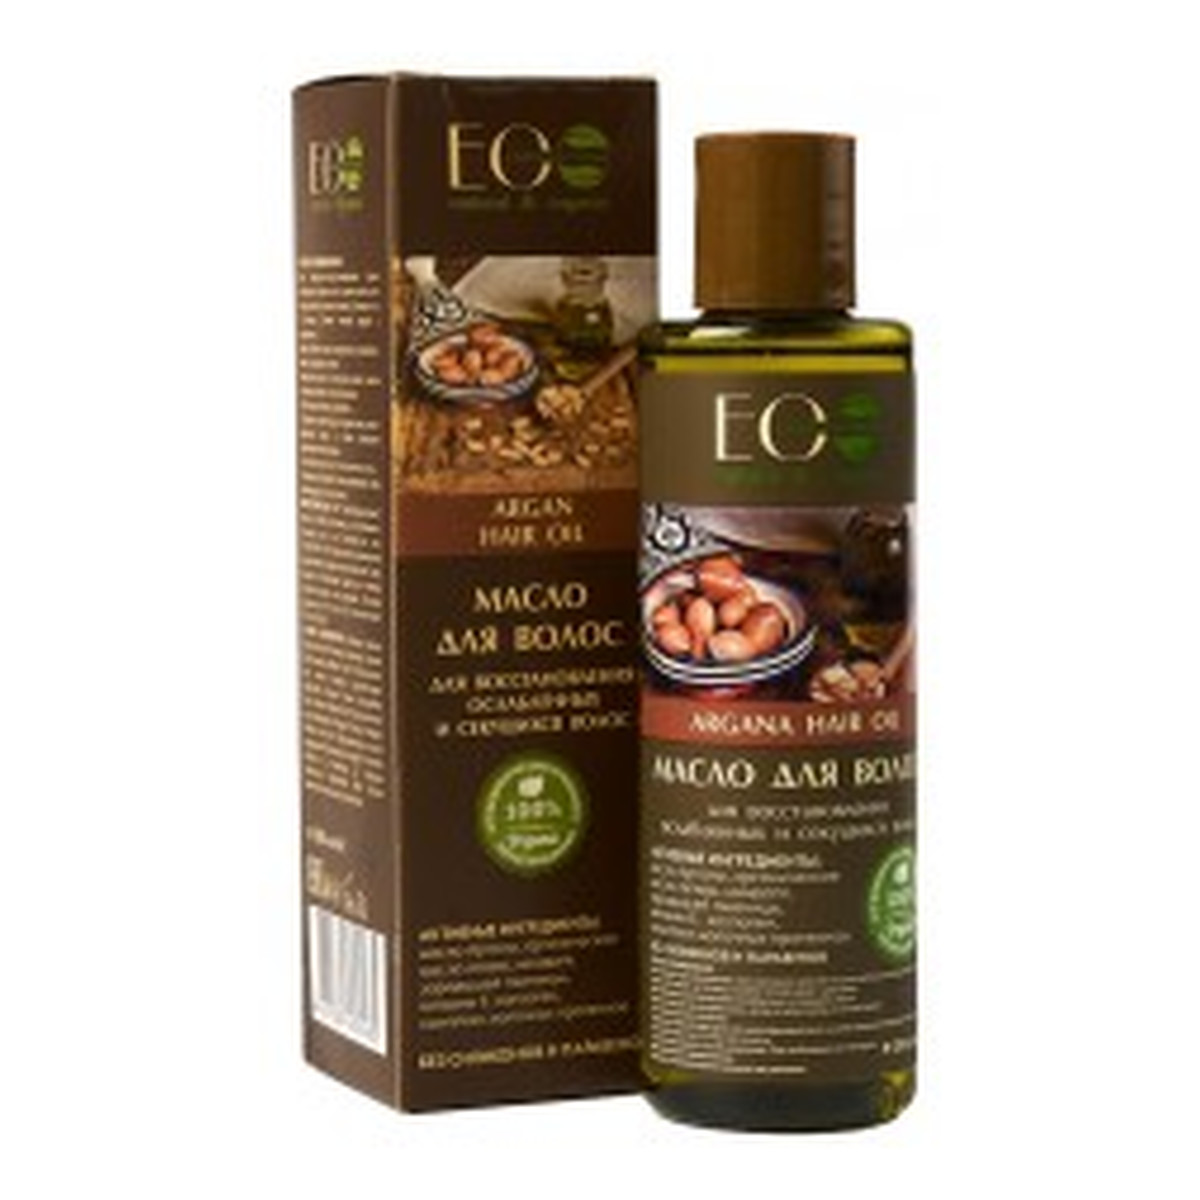 eco laboratorie olejek arganowy do włosów